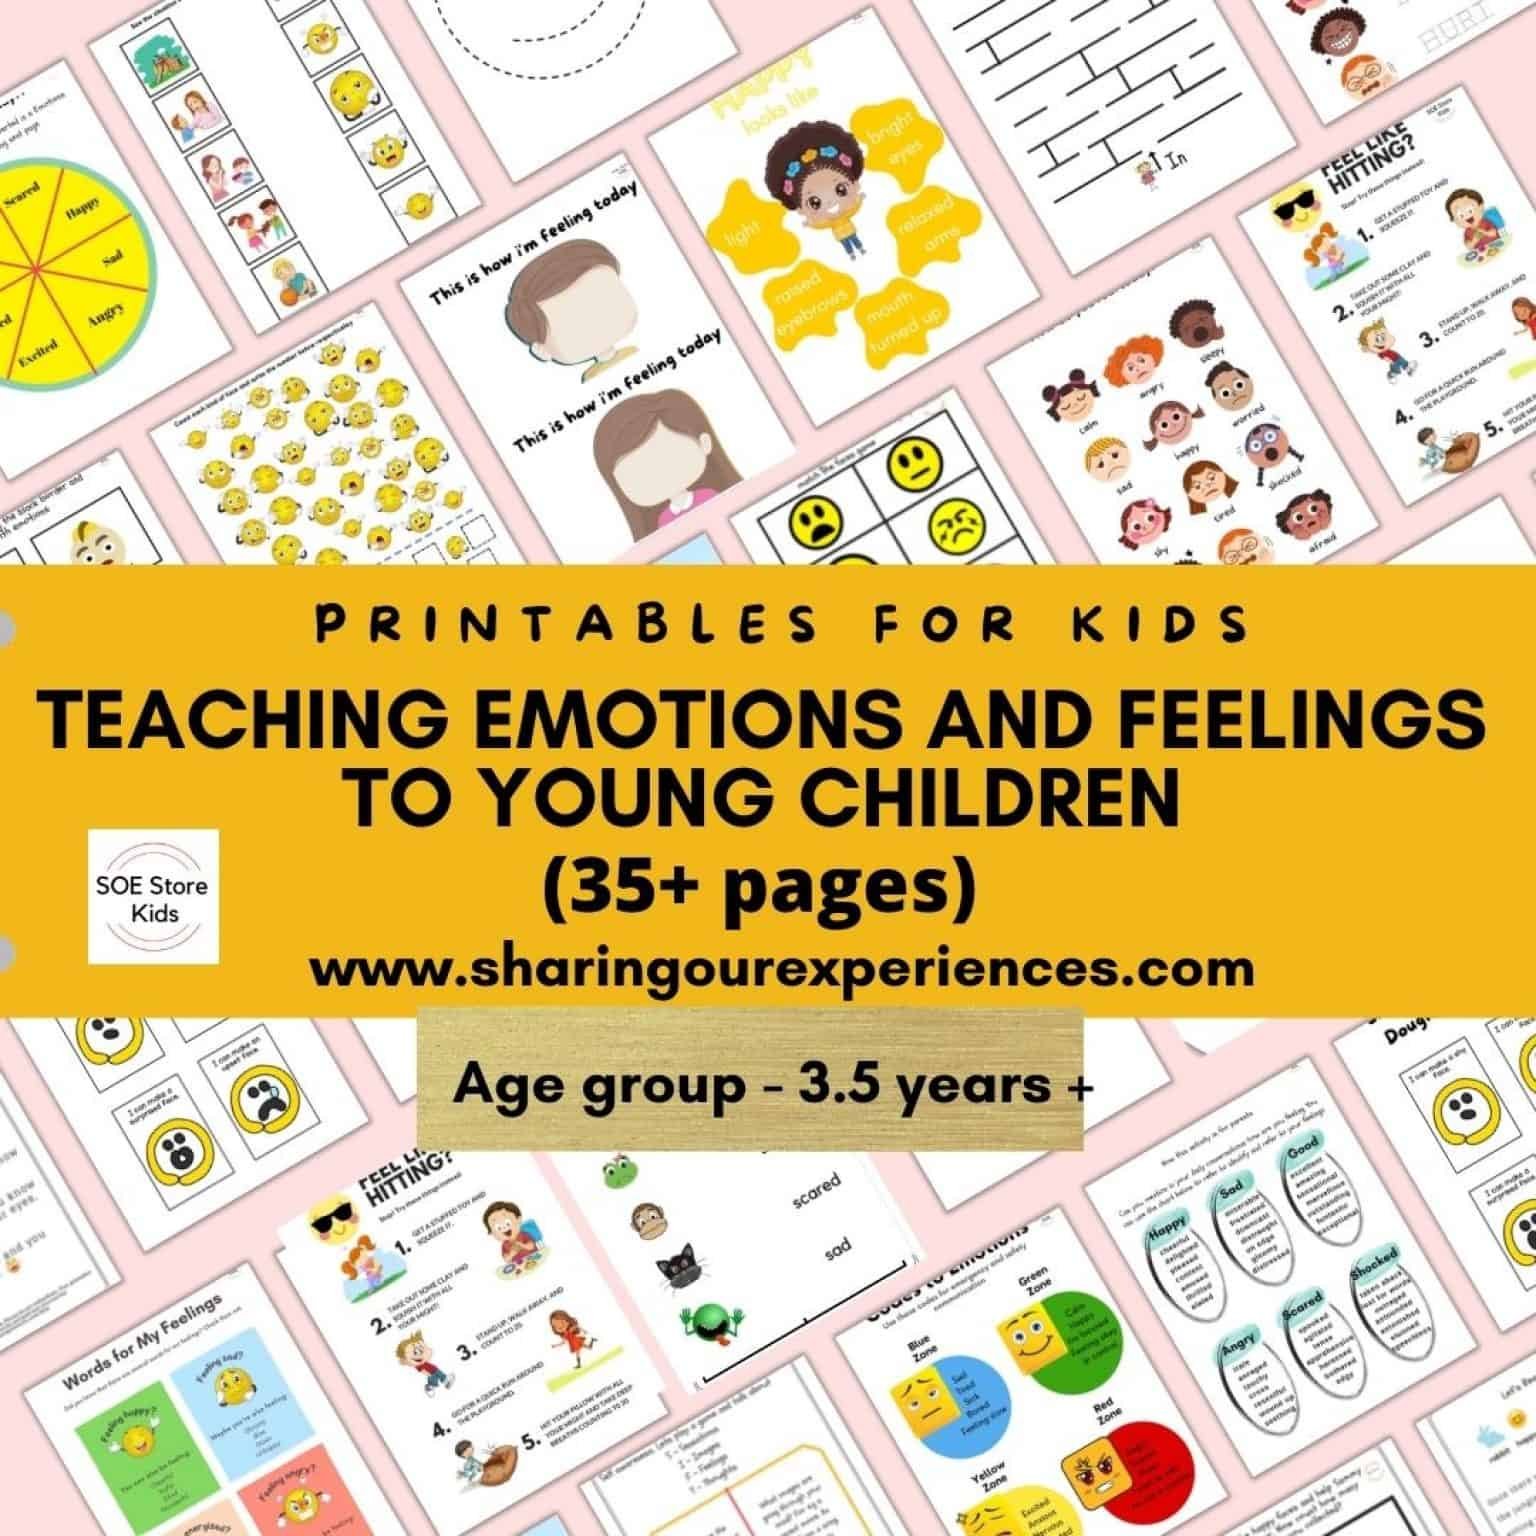 Teaching emotions